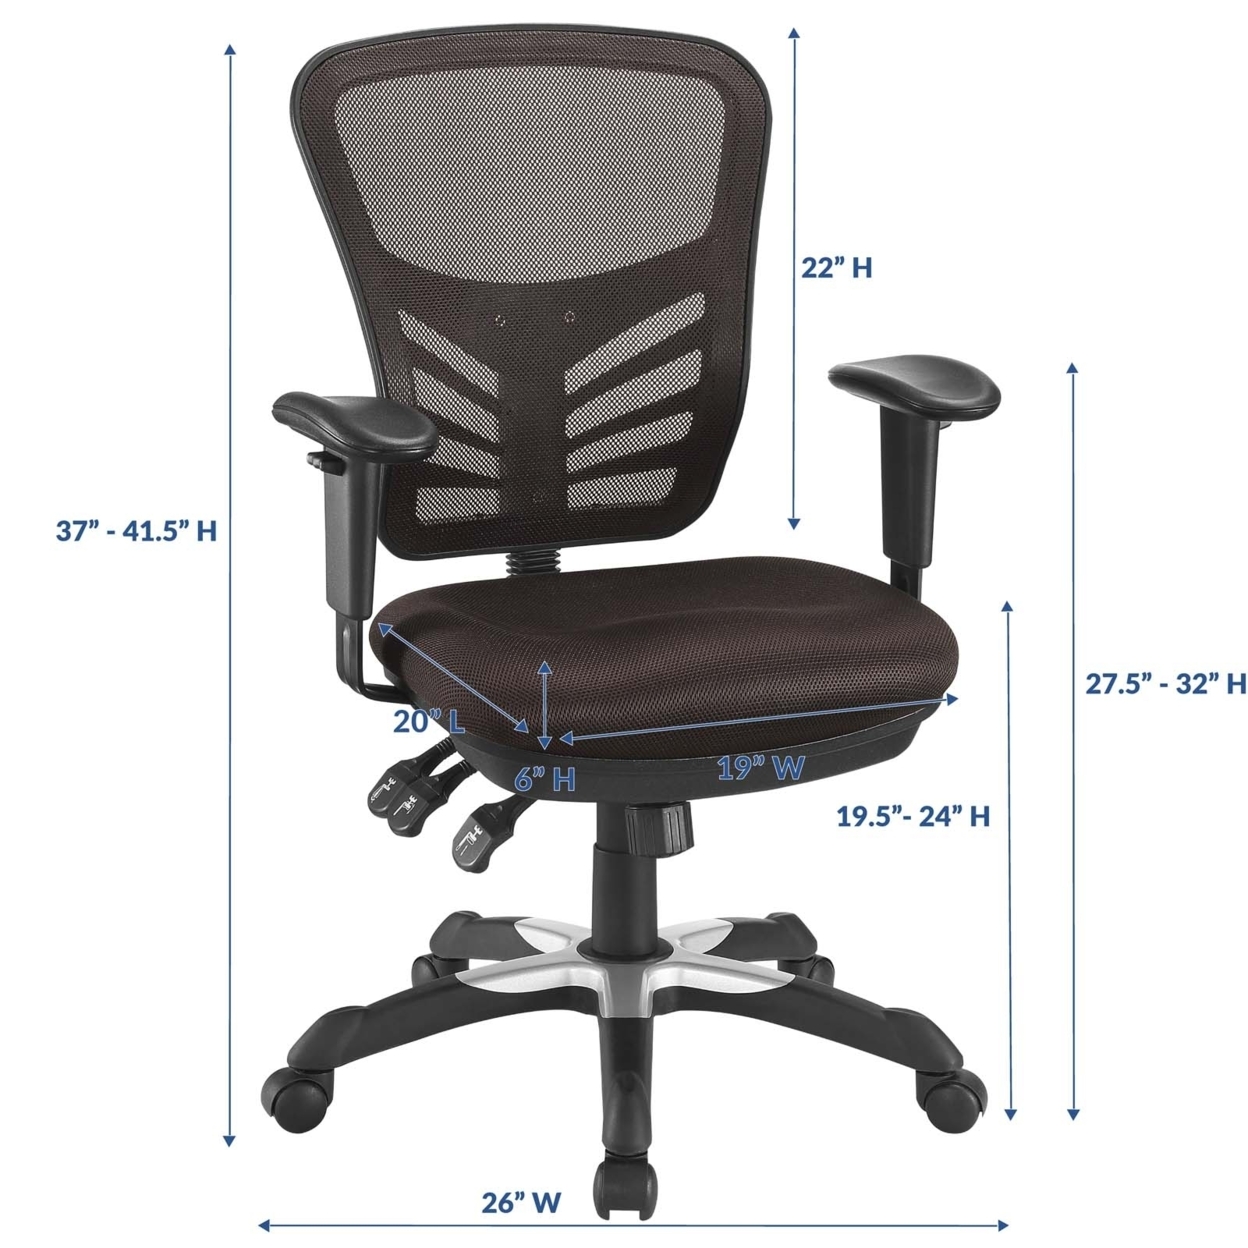 Articulate Mesh Office Chair, EEI-757-BRN